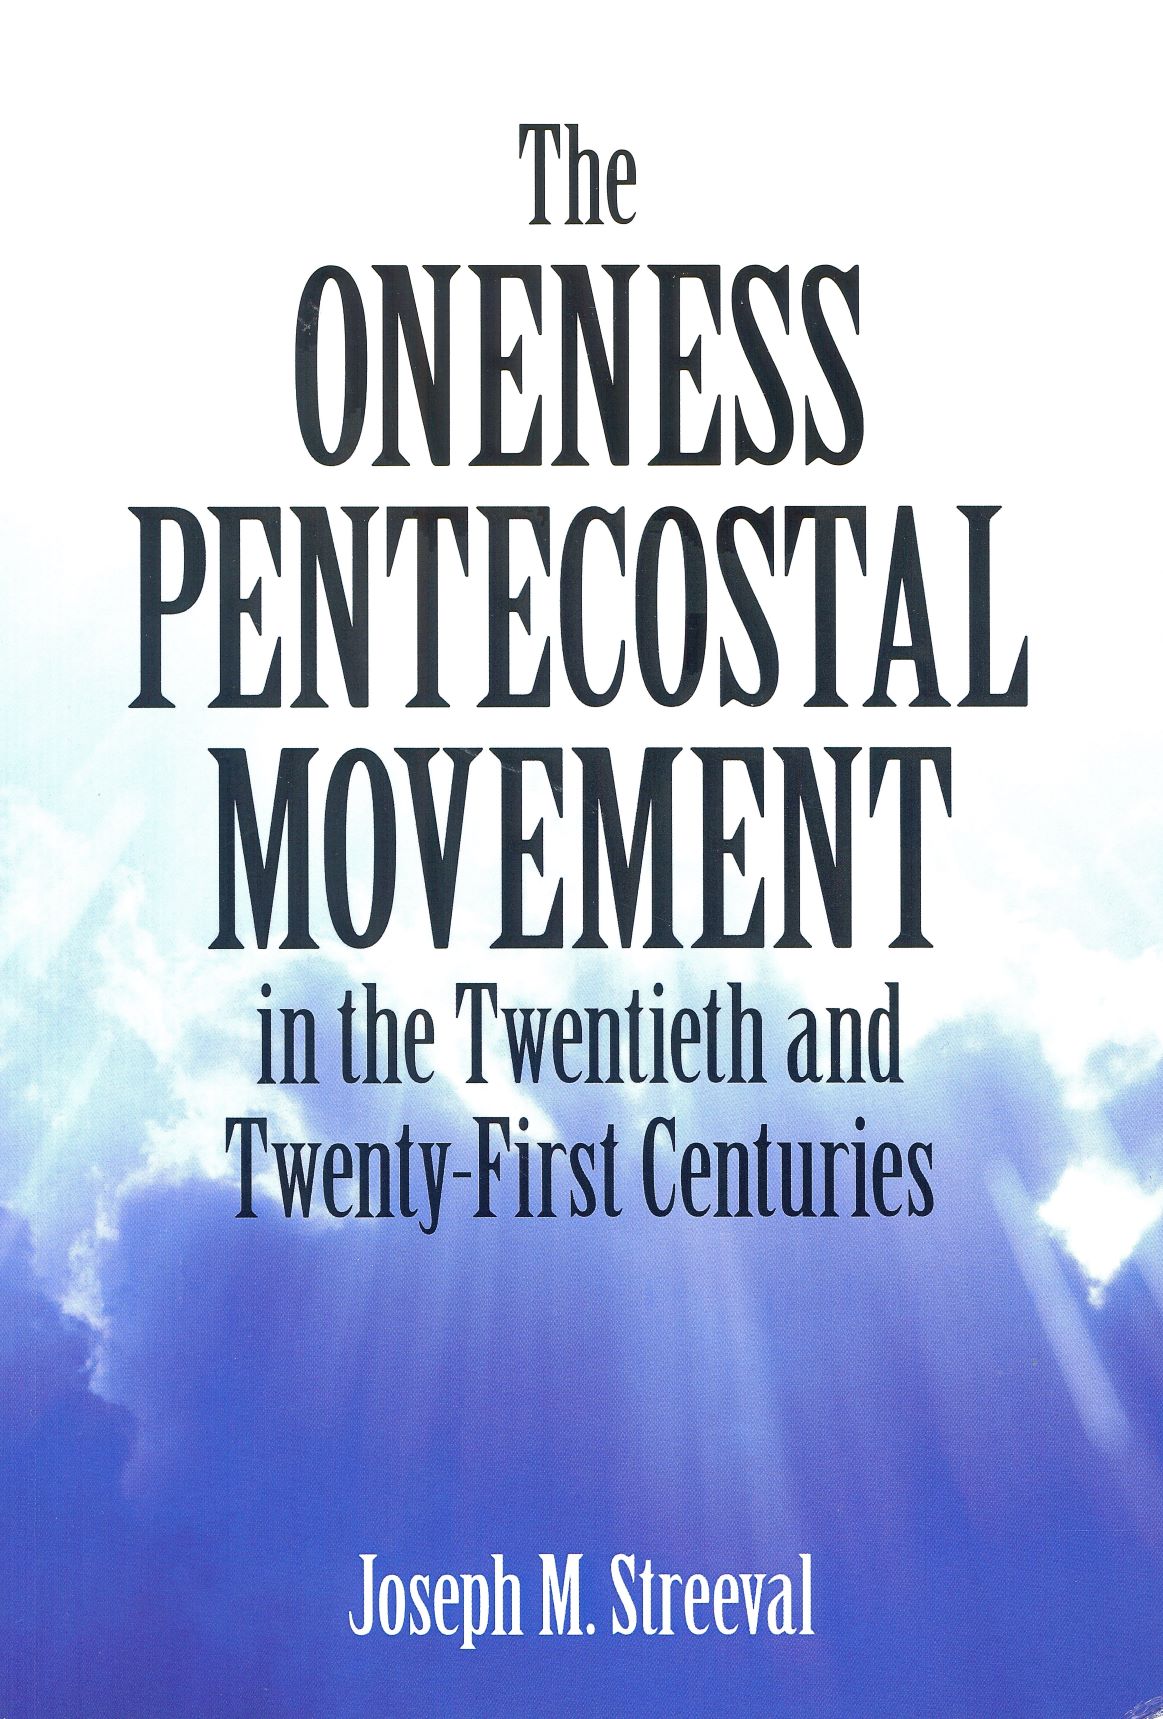 The Oneness Penteco...